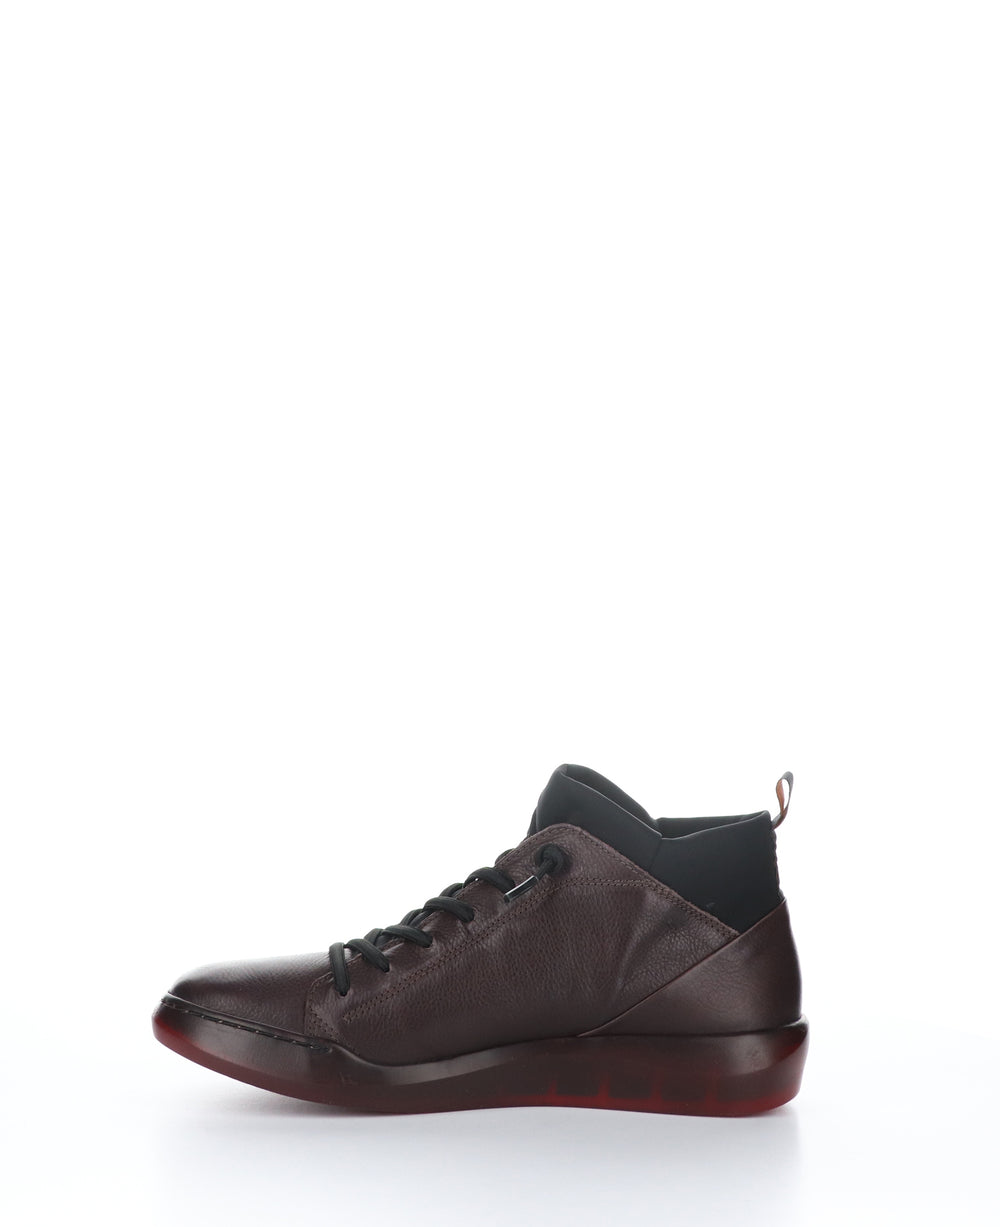 BIEL549SOF Wine/Black Round Toe Shoes|BIEL549SOF Chaussures à Bout Rond in Violet